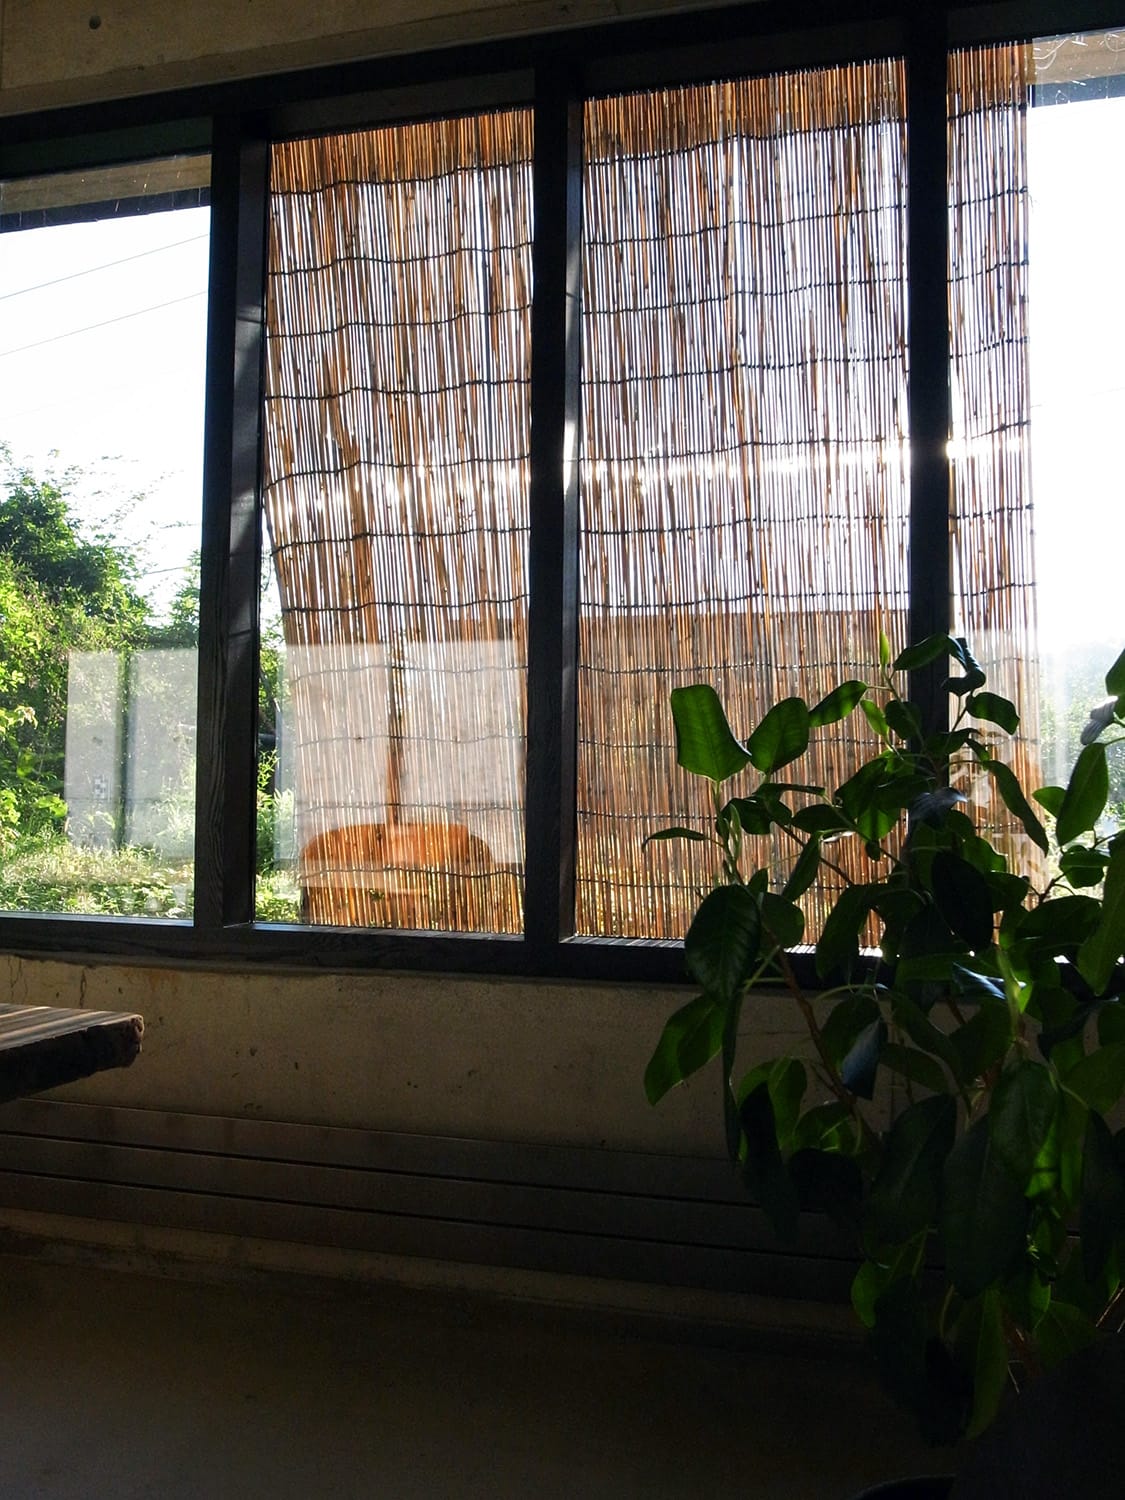 連続窓の前に立て掛けられた葦簀（よしず）を室内から見る